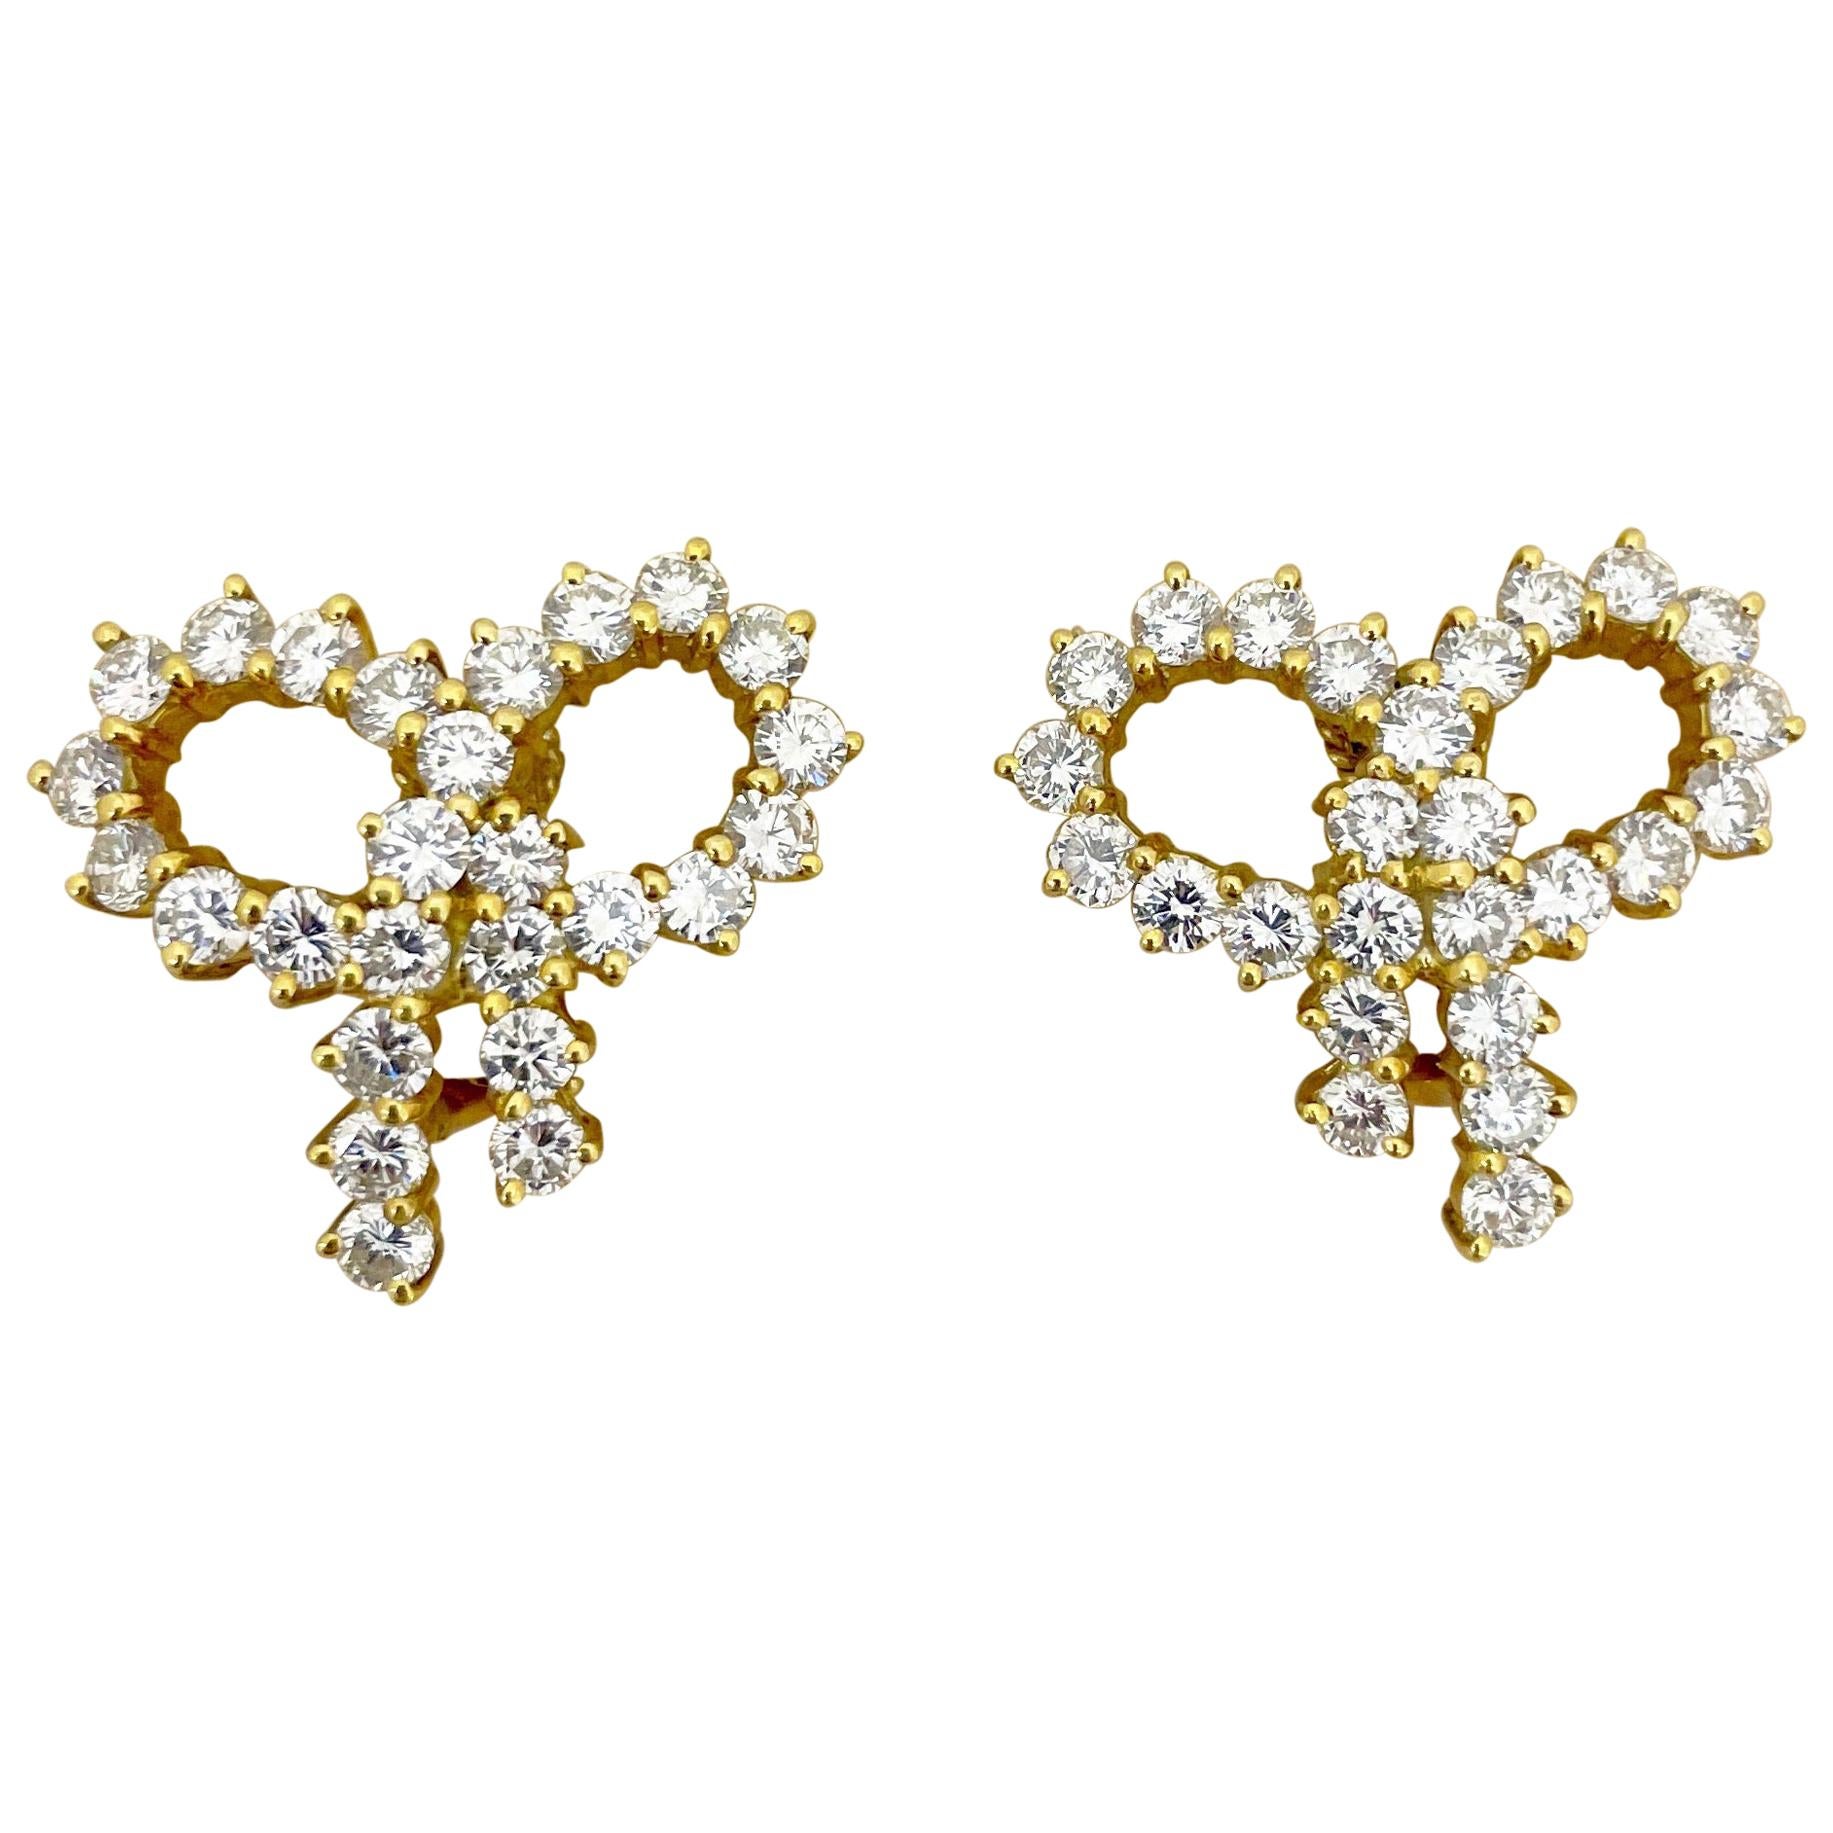 Cellini Jewelers NYC 18 Karat Yellow gold 4.60 Carat Diamond Bow Earrings